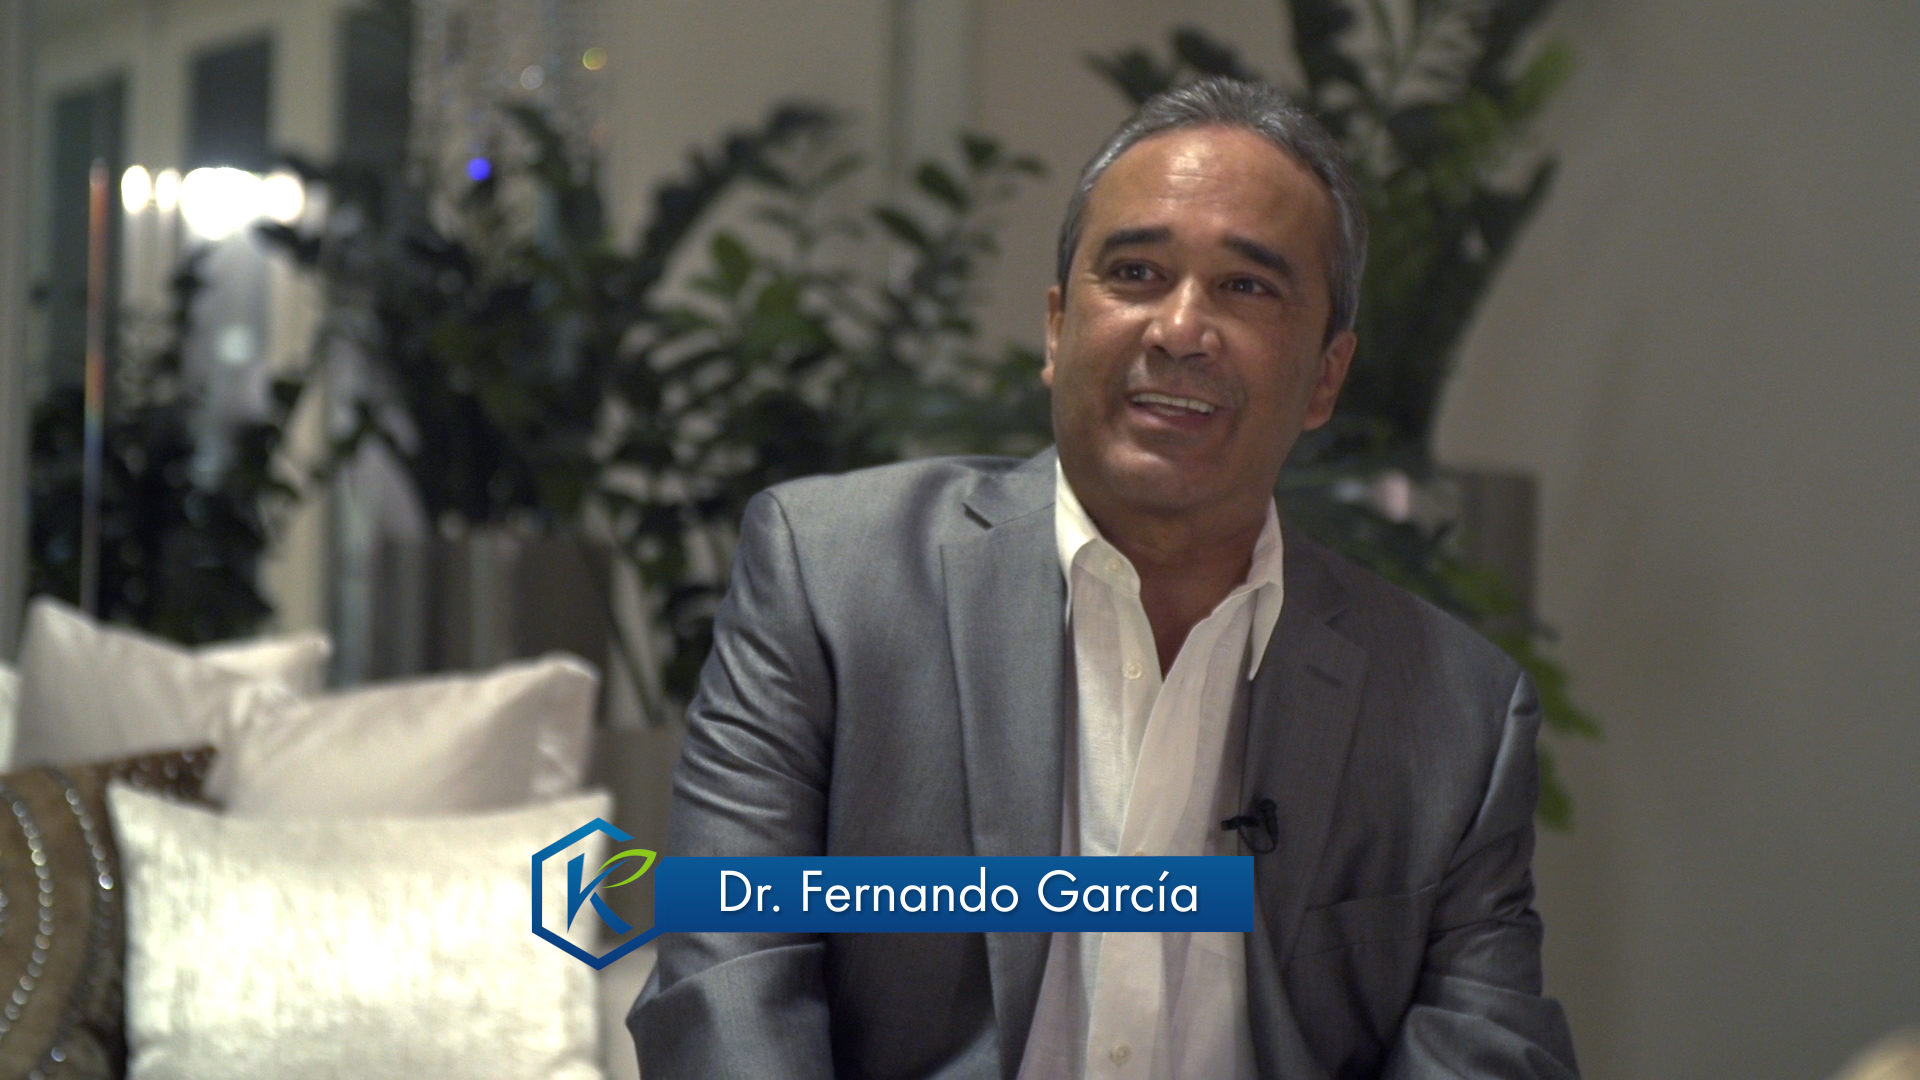 Dr. Fernado Garcia